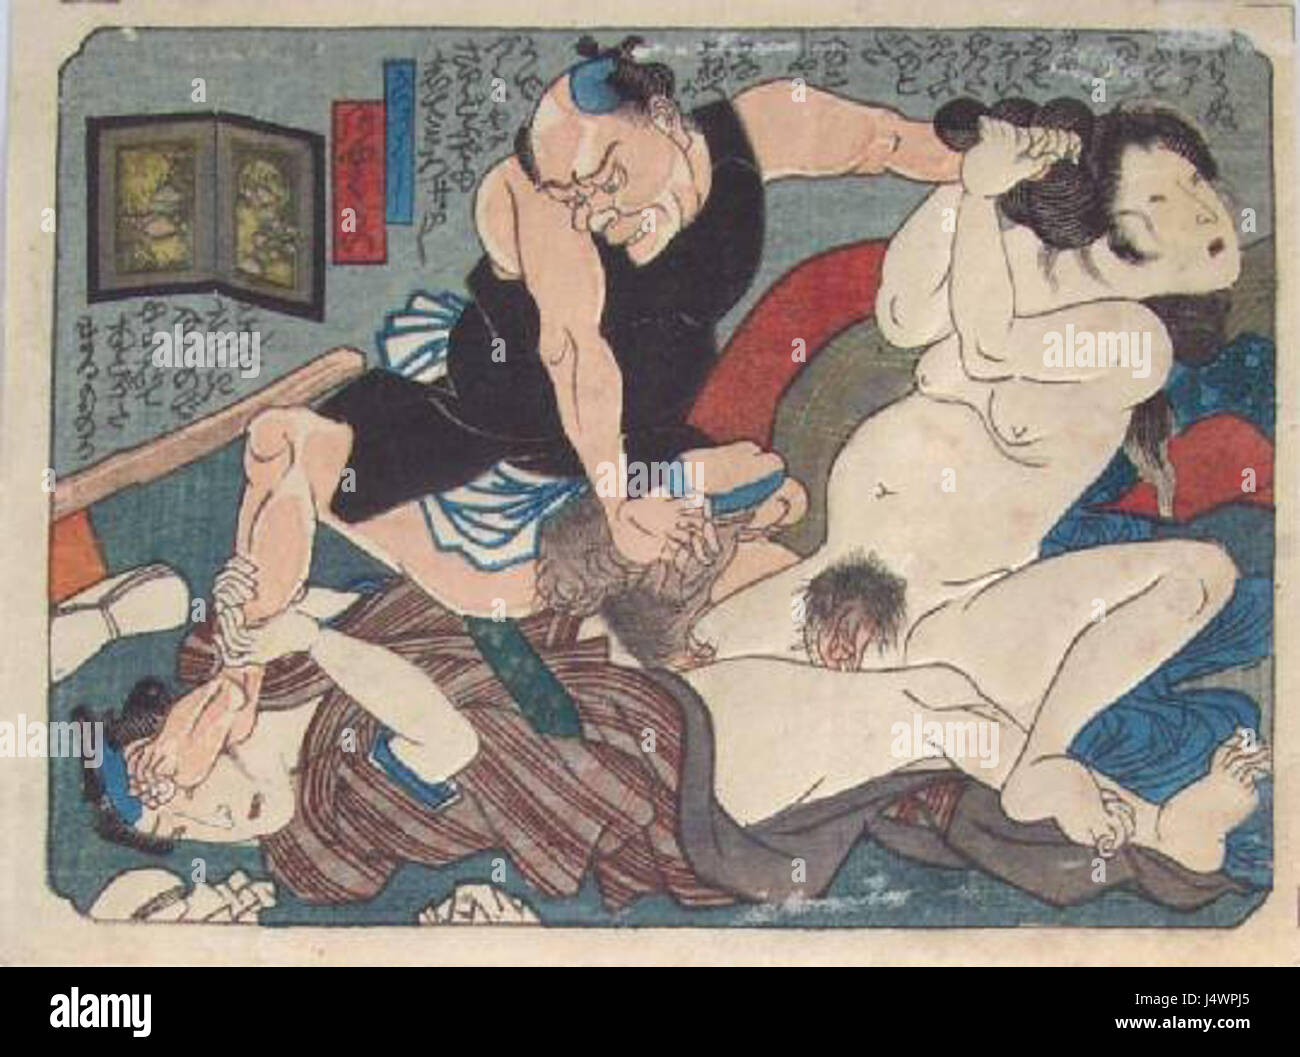 эротика в японской графике фото 67